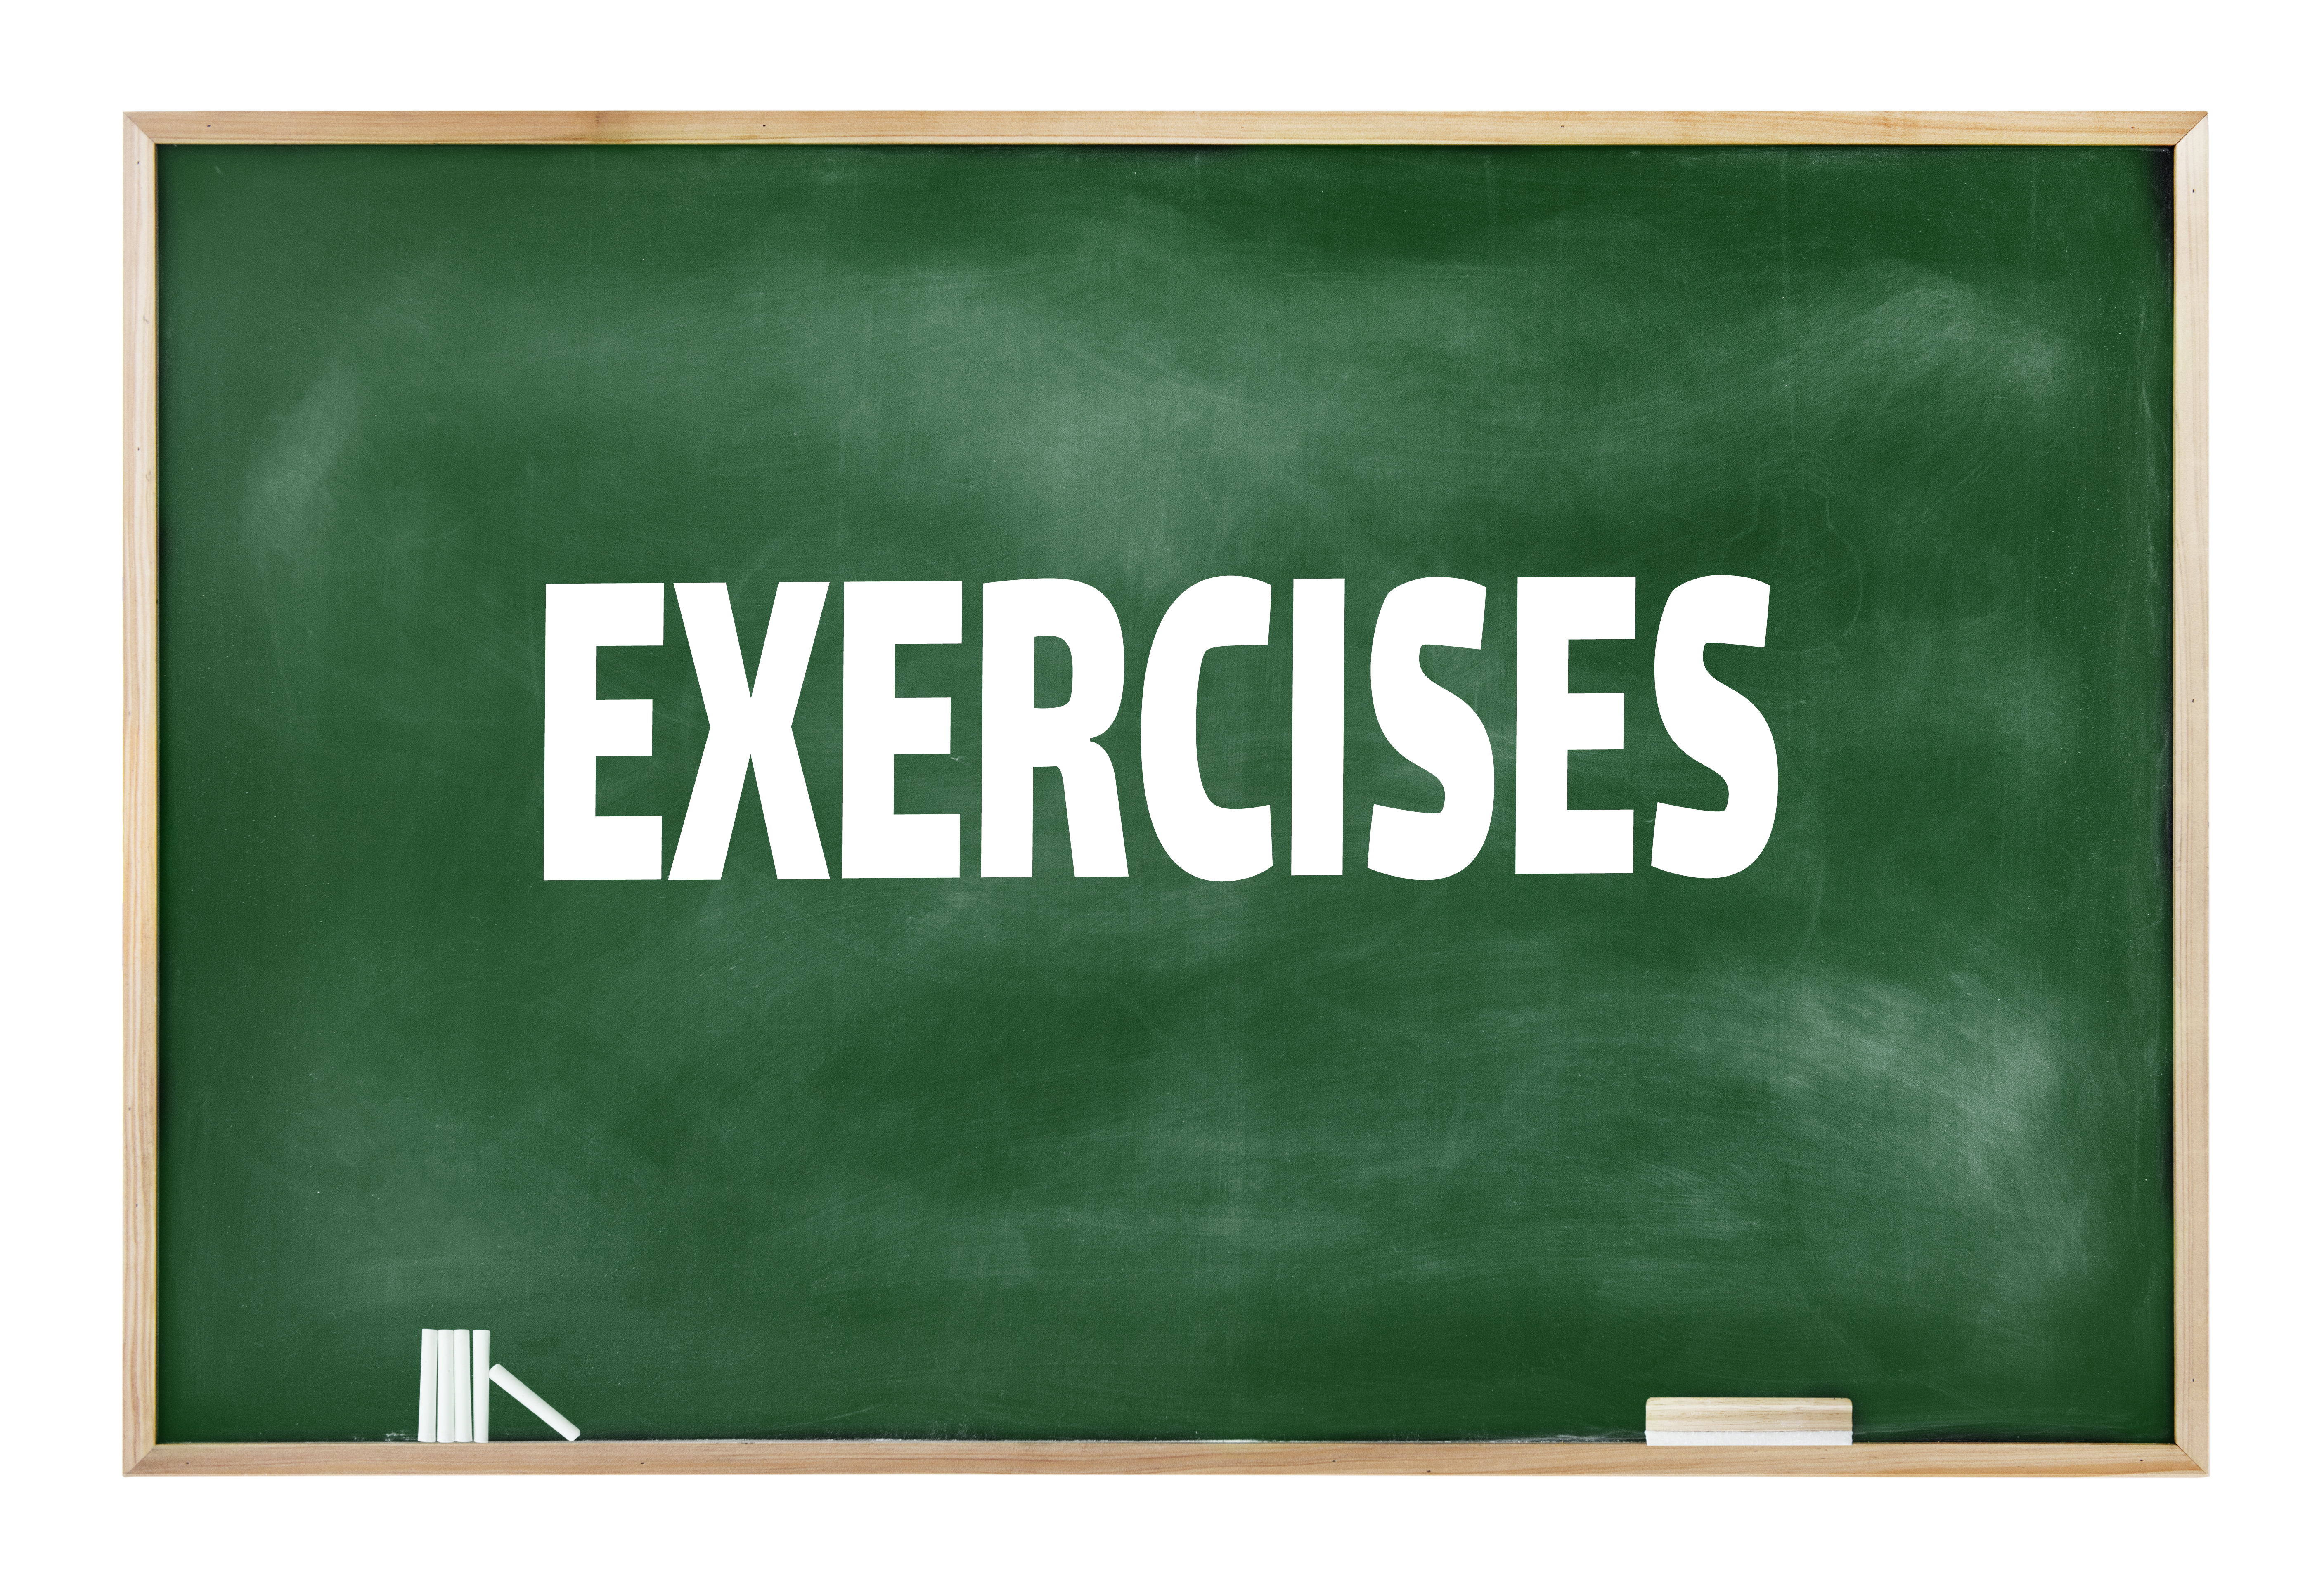 exercises